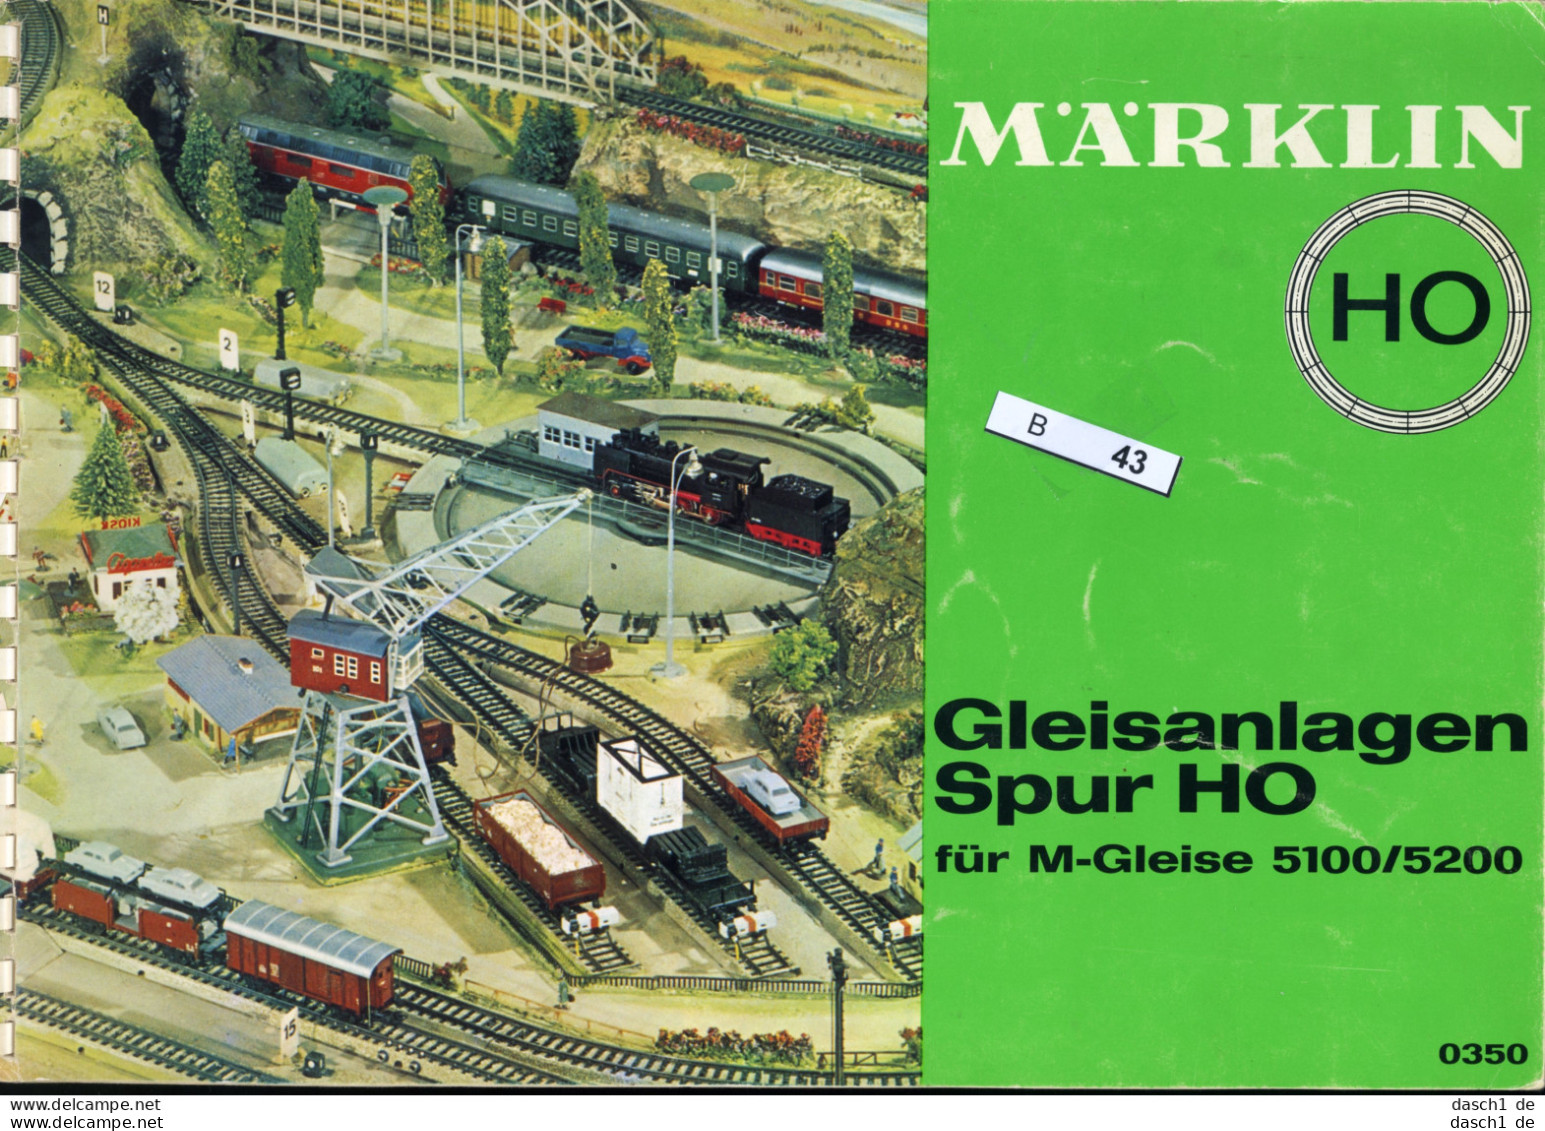 Märklin Gleisanlagen Spur H0, B-043 - Speelgoed & Miniaturen